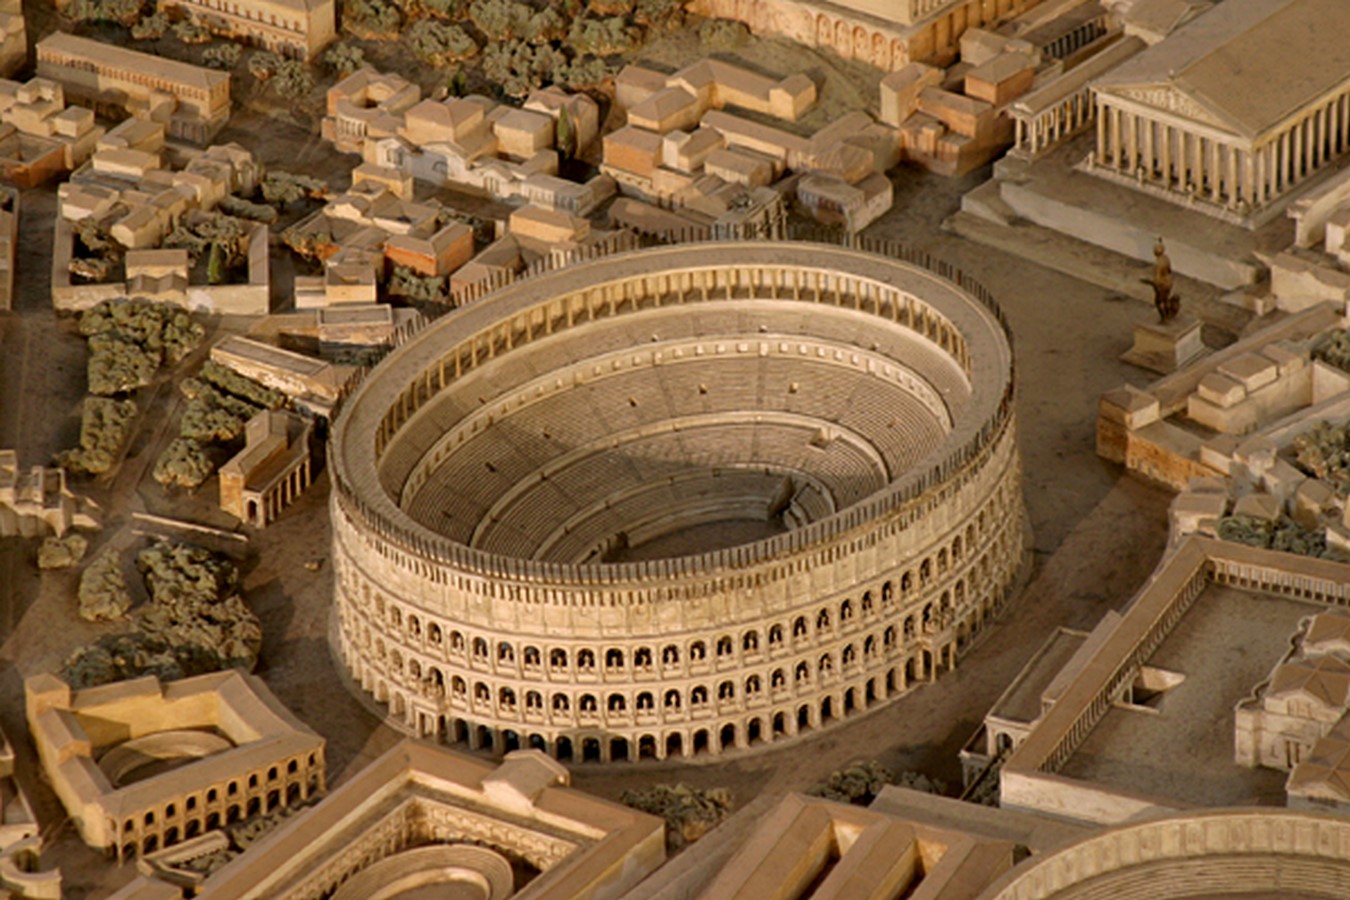 Original plan for the Colosseum_ https://simpleandinteresting.wordpress.com/tag/colosseum-rome/